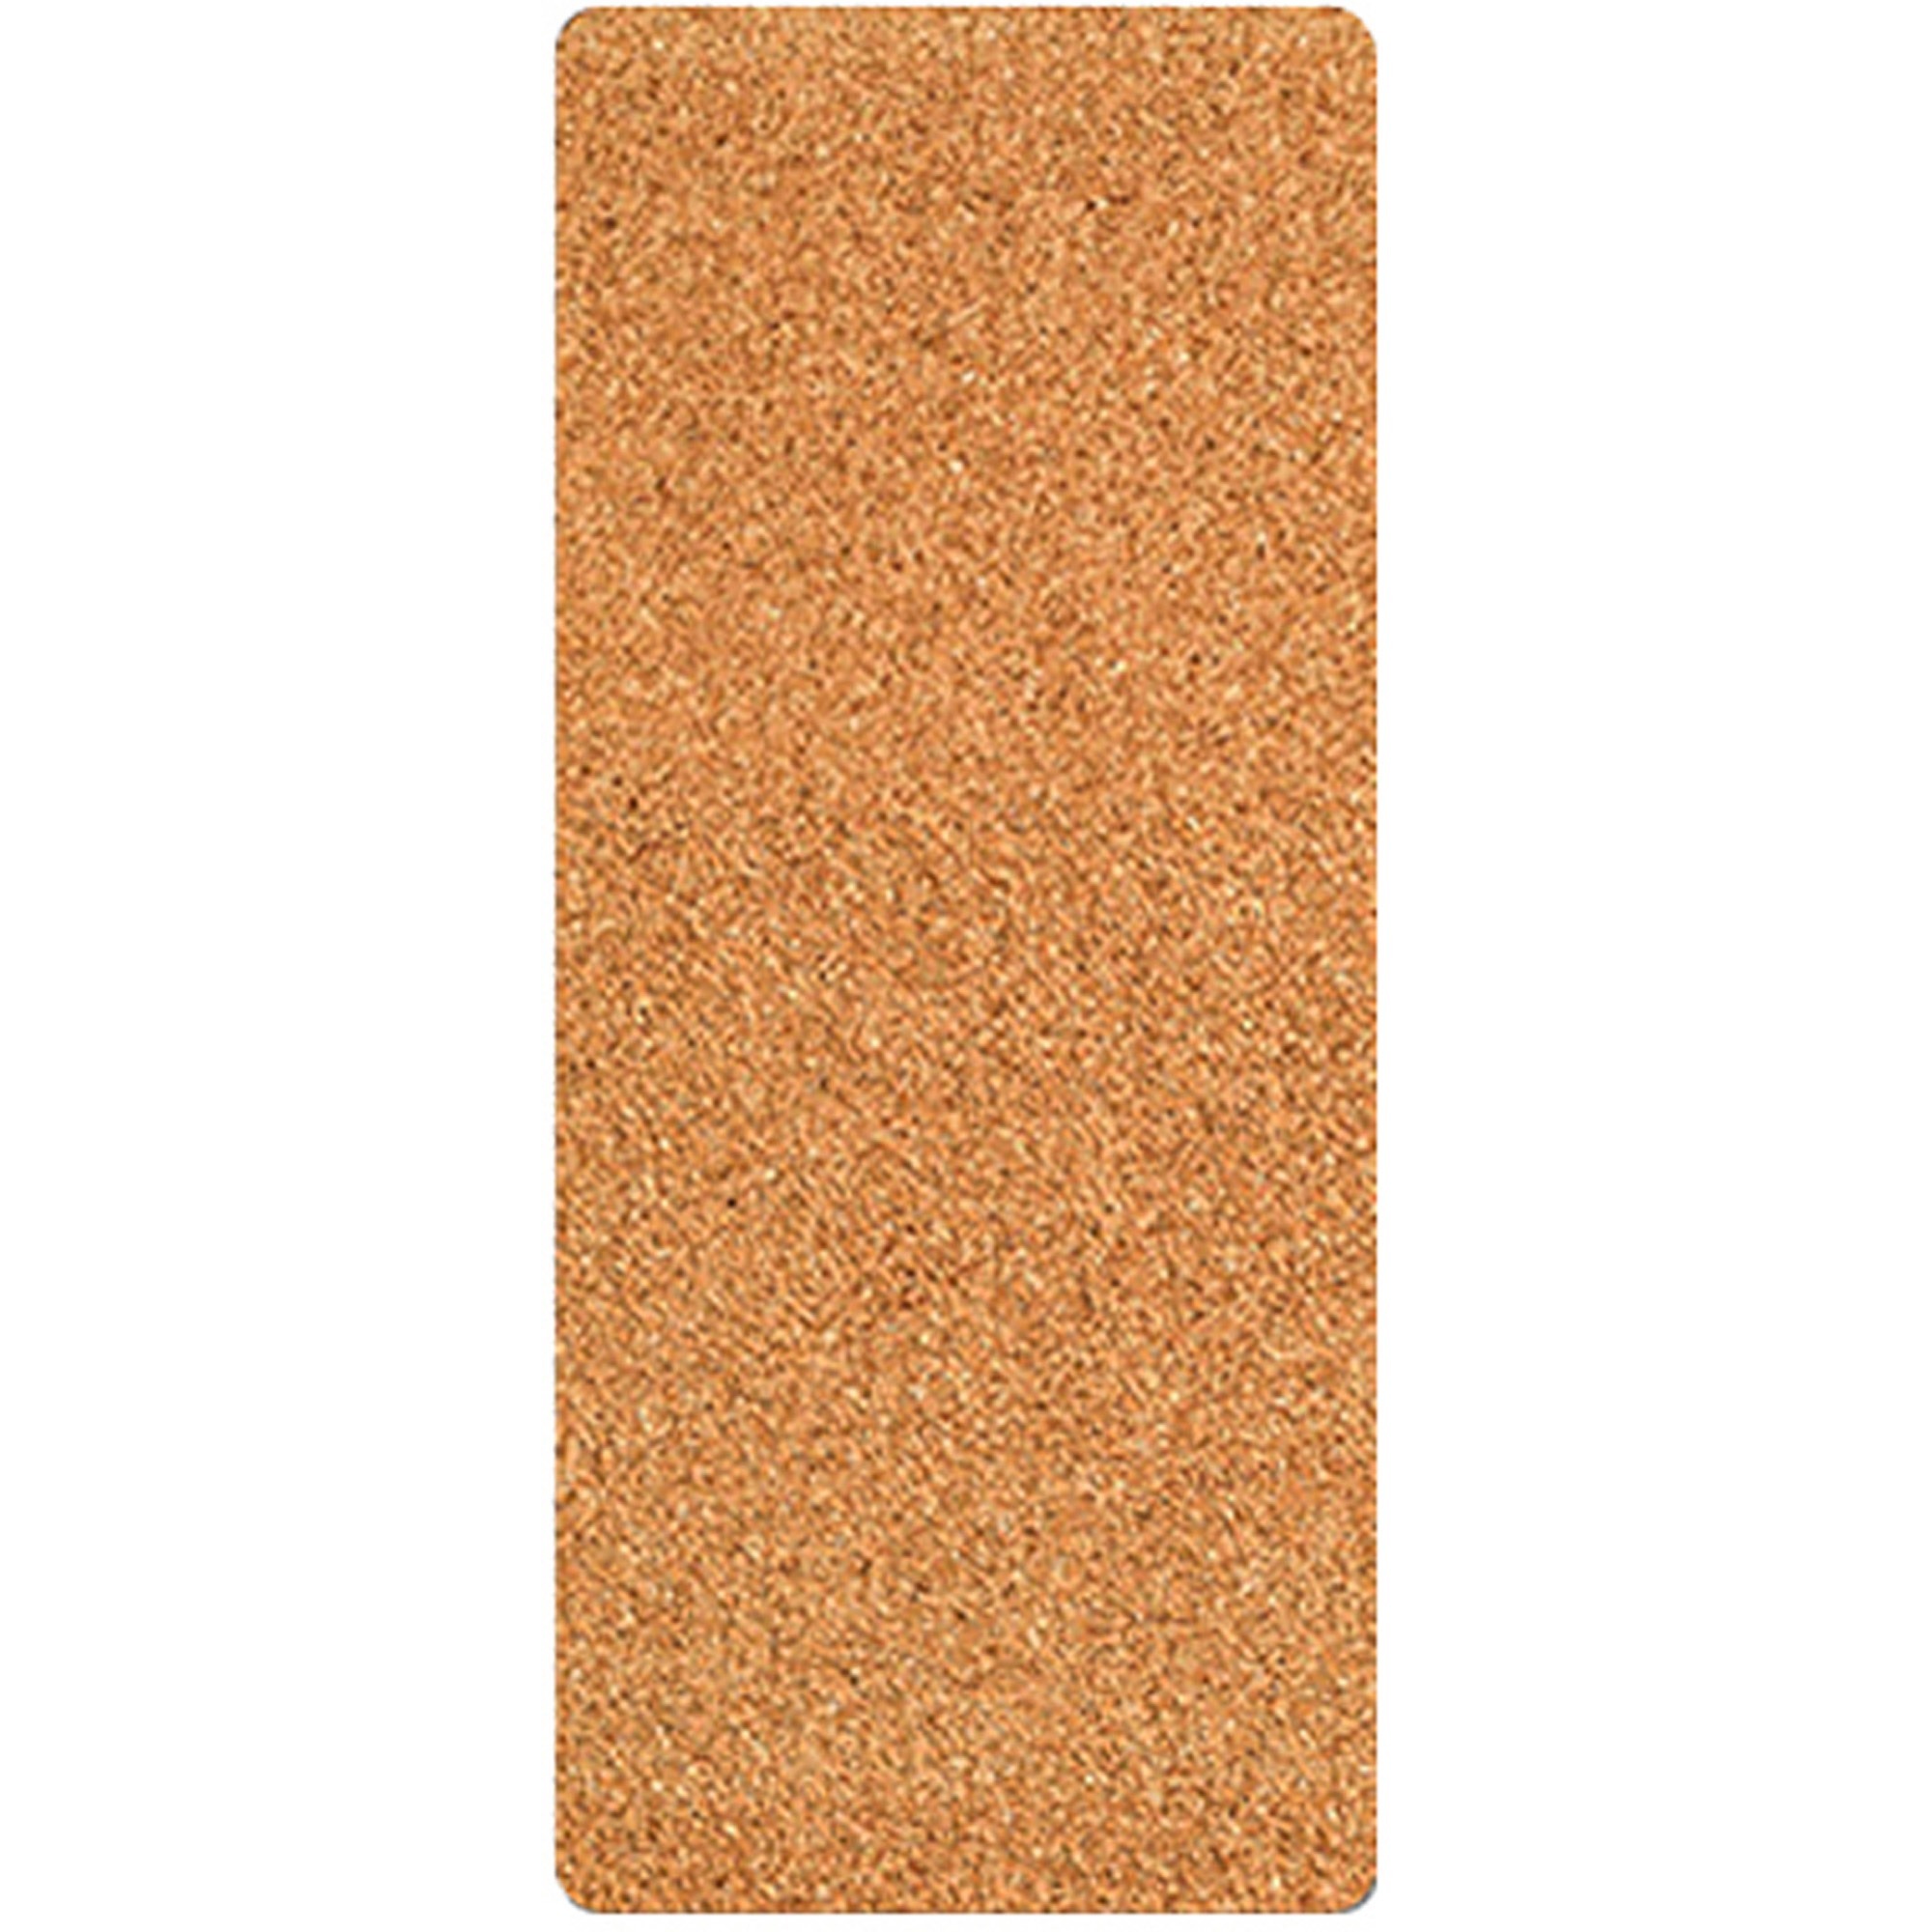 Unframed Cork Board Sheets